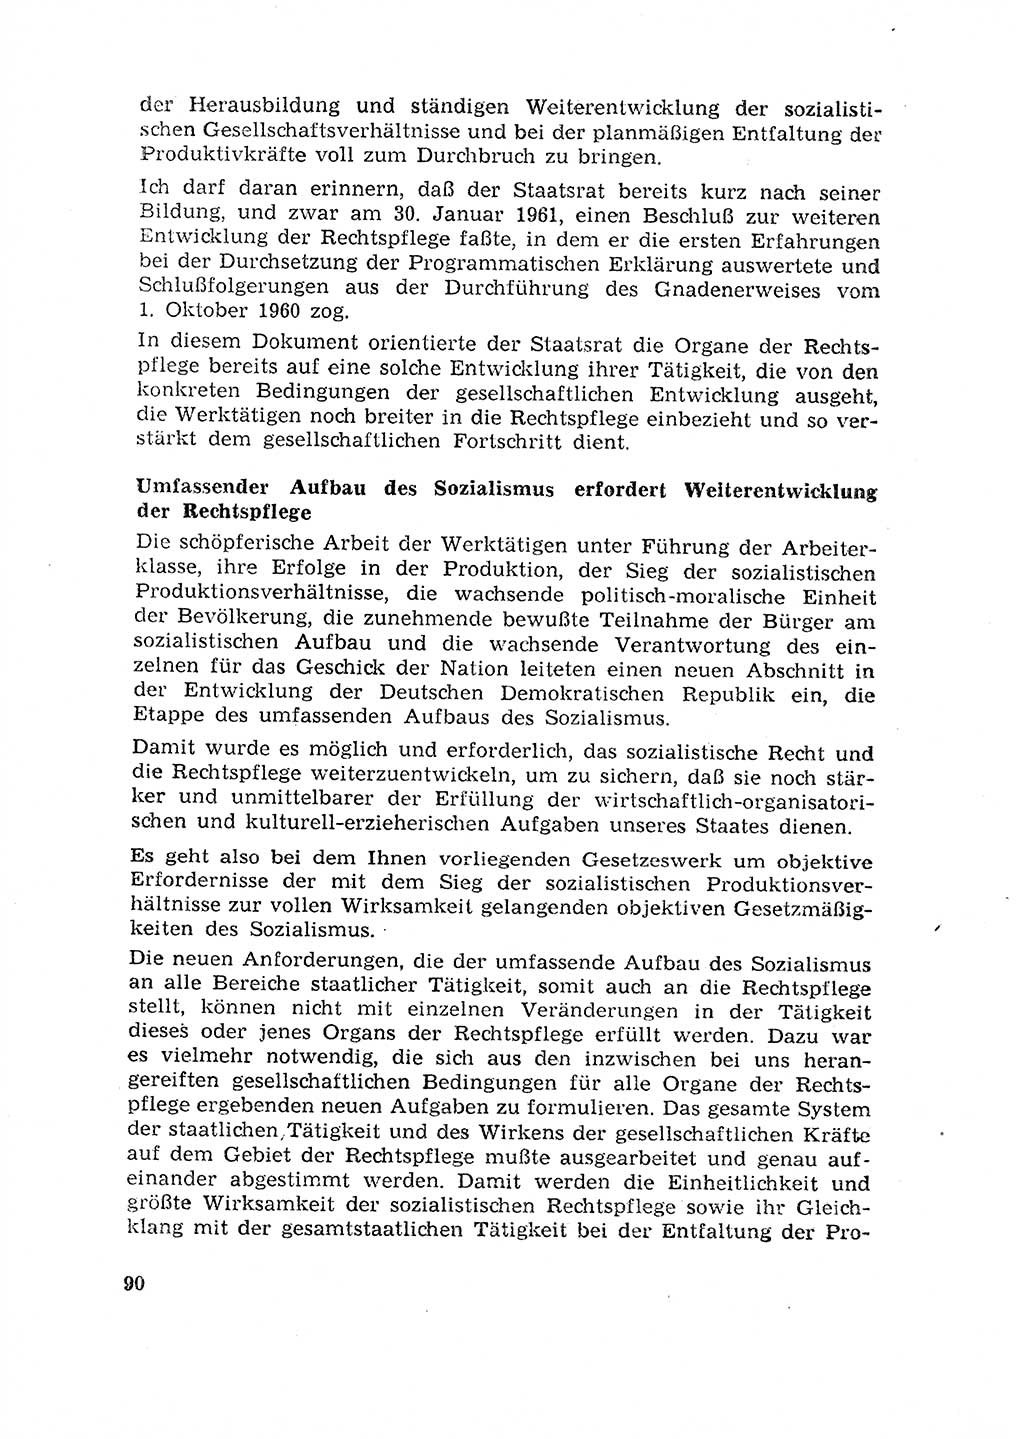 Rechtspflegeerlaß [Deutsche Demokratische Republik (DDR)] 1963, Seite 90 (R.-Pfl.-Erl. DDR 1963, S. 90)